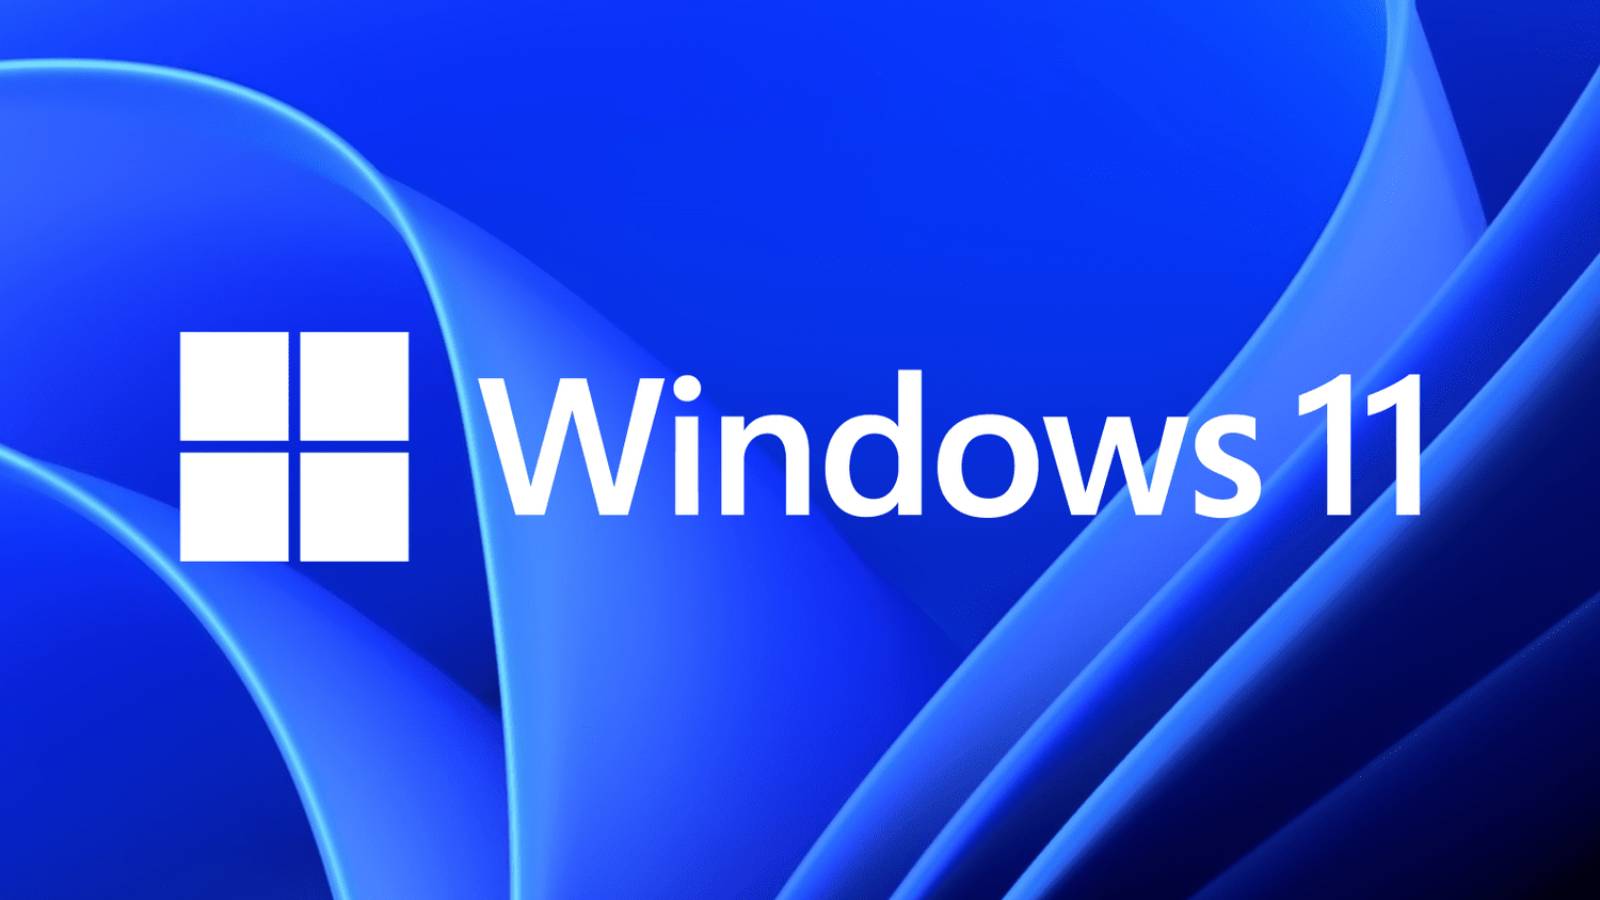 Microsoft kondigt beslissing over Windows 11 aan die voor veel mensen een verrassende beslissing is genomen